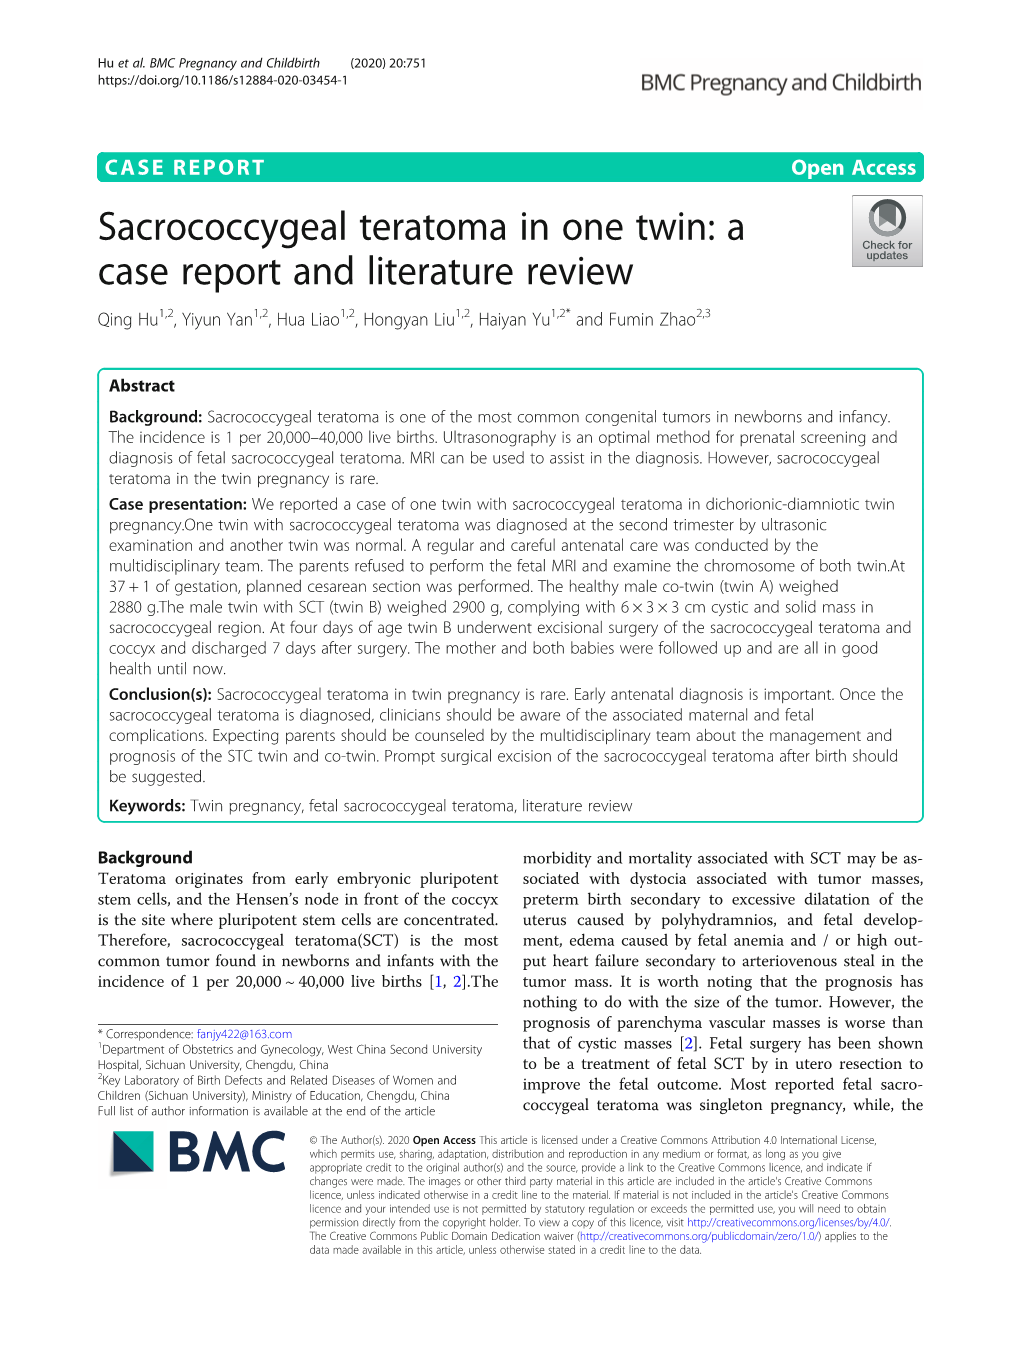 Sacrococcygeal Teratoma in One Twin: a Case Report and Literature Review Qing Hu1,2, Yiyun Yan1,2, Hua Liao1,2, Hongyan Liu1,2, Haiyan Yu1,2* and Fumin Zhao2,3